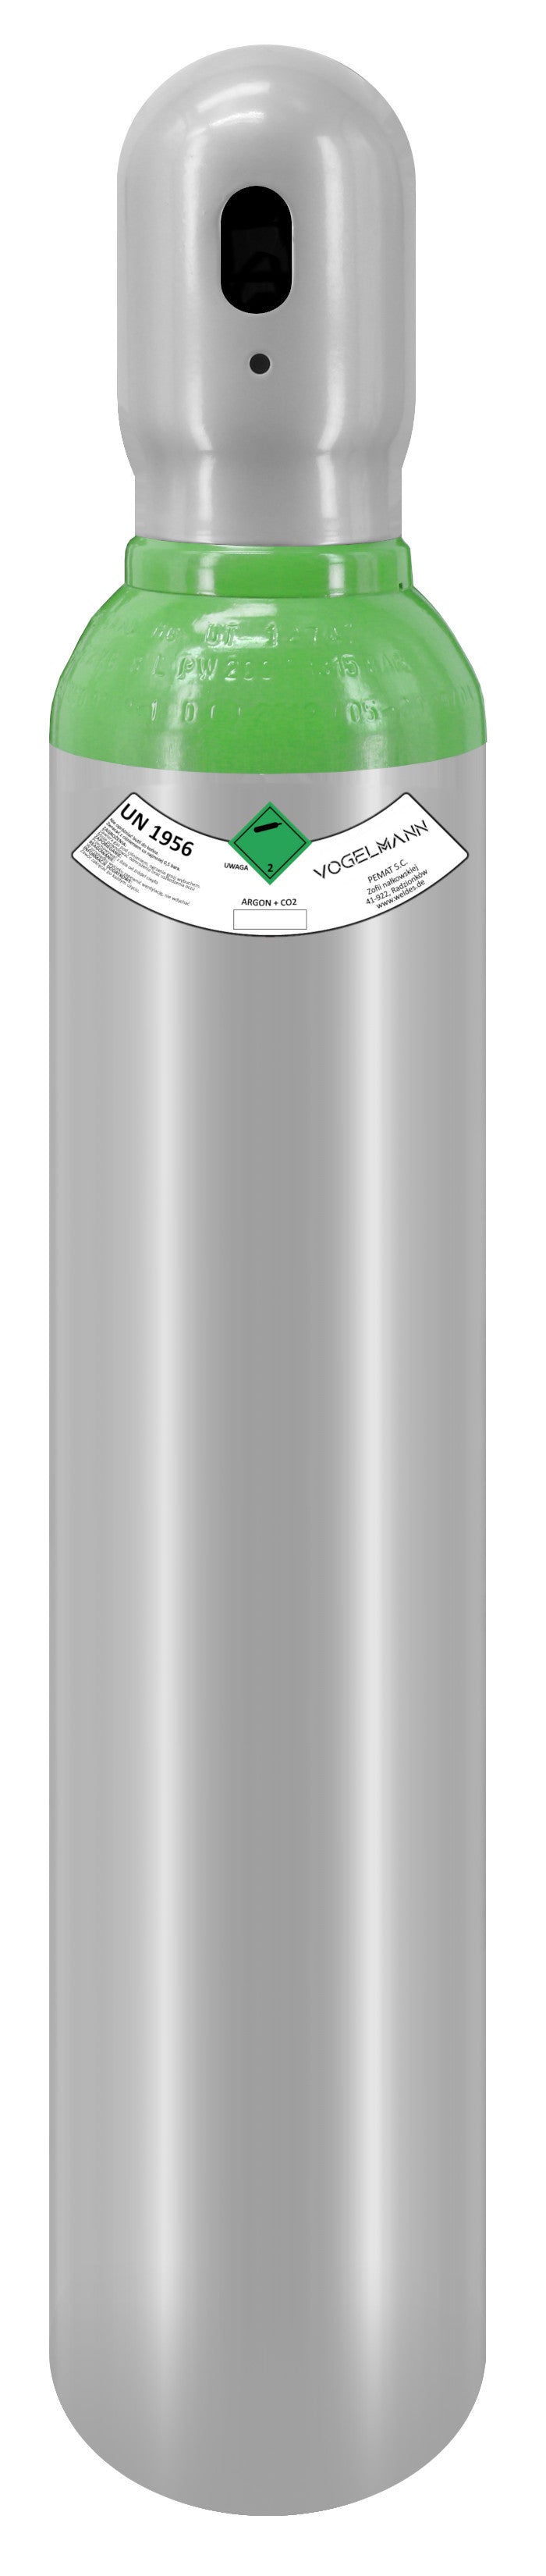 Argon/CO2 98/2% full gas cylinder 8L 1,5m3 Vogelmann